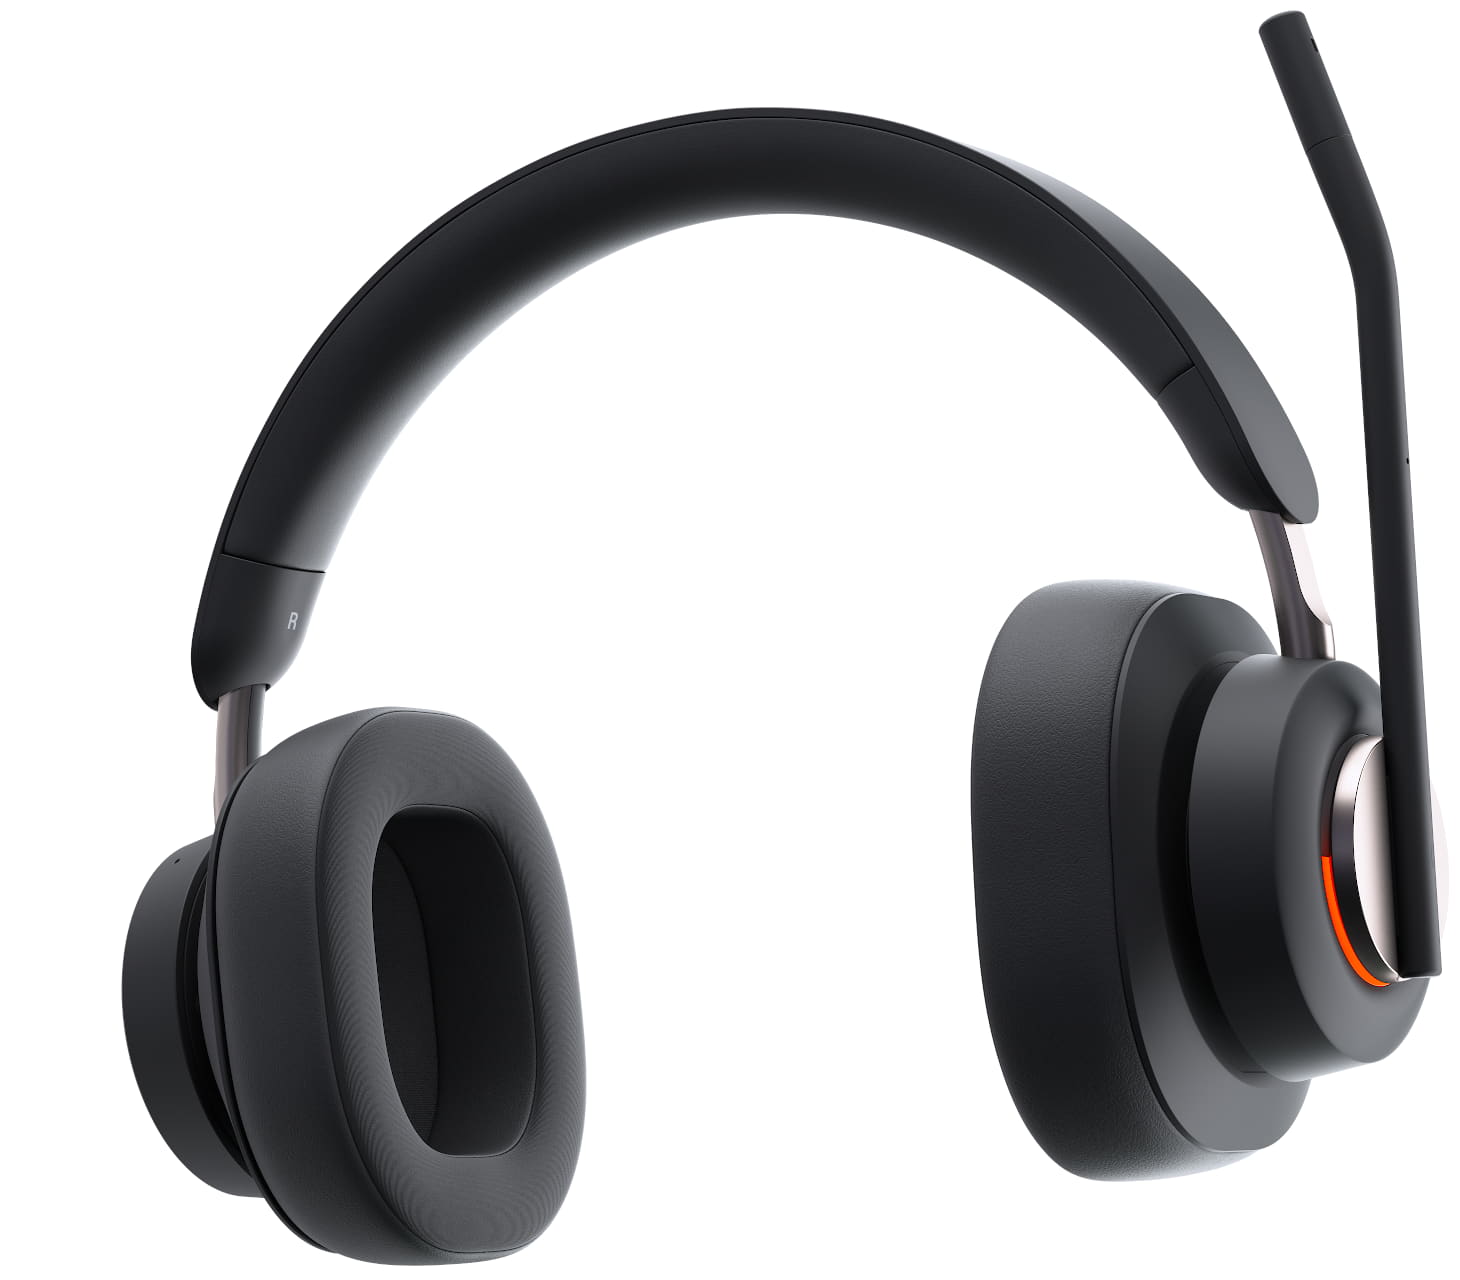 Närbild framifrån på Kensington H3000 Bluetooth Over-ear-headset med upptagetlampan tänd och mikrofonen i vänd för mute-position och höger öronkåpa expanderas för att visa tekniken
                                    